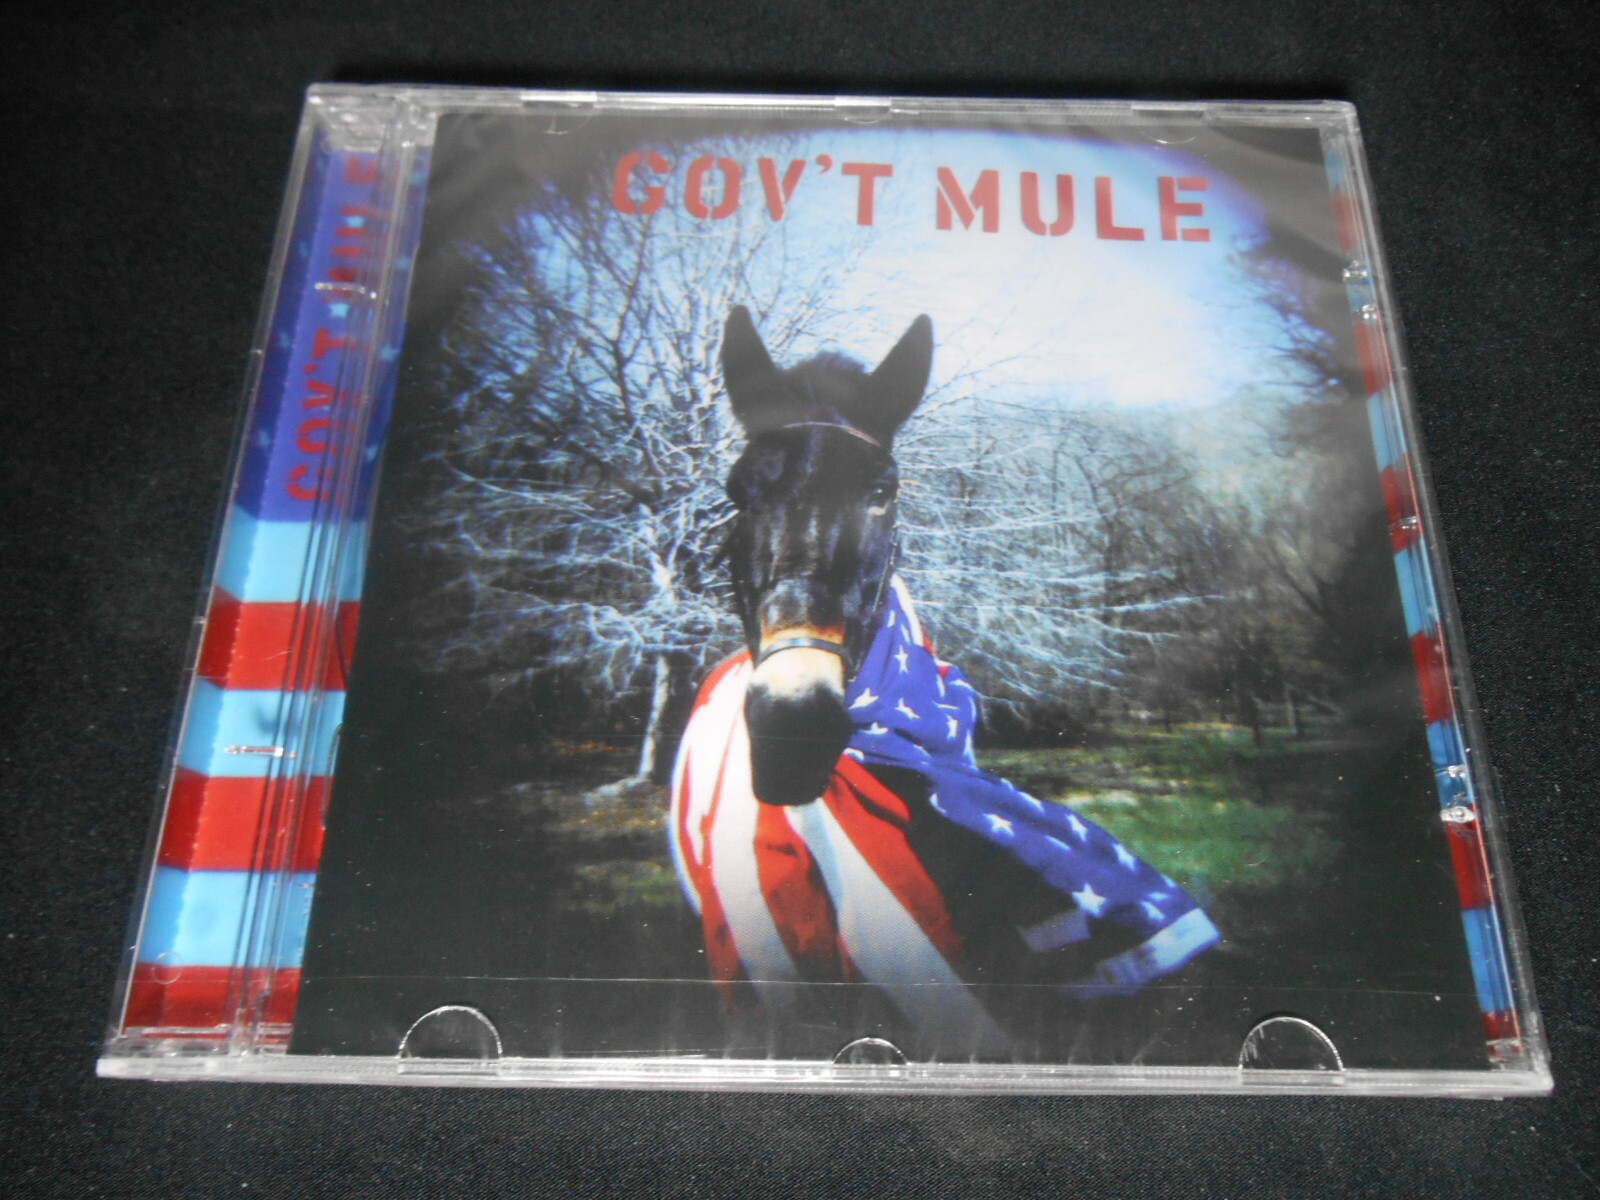 CD - Govt Mule - 1995 (lacrado)